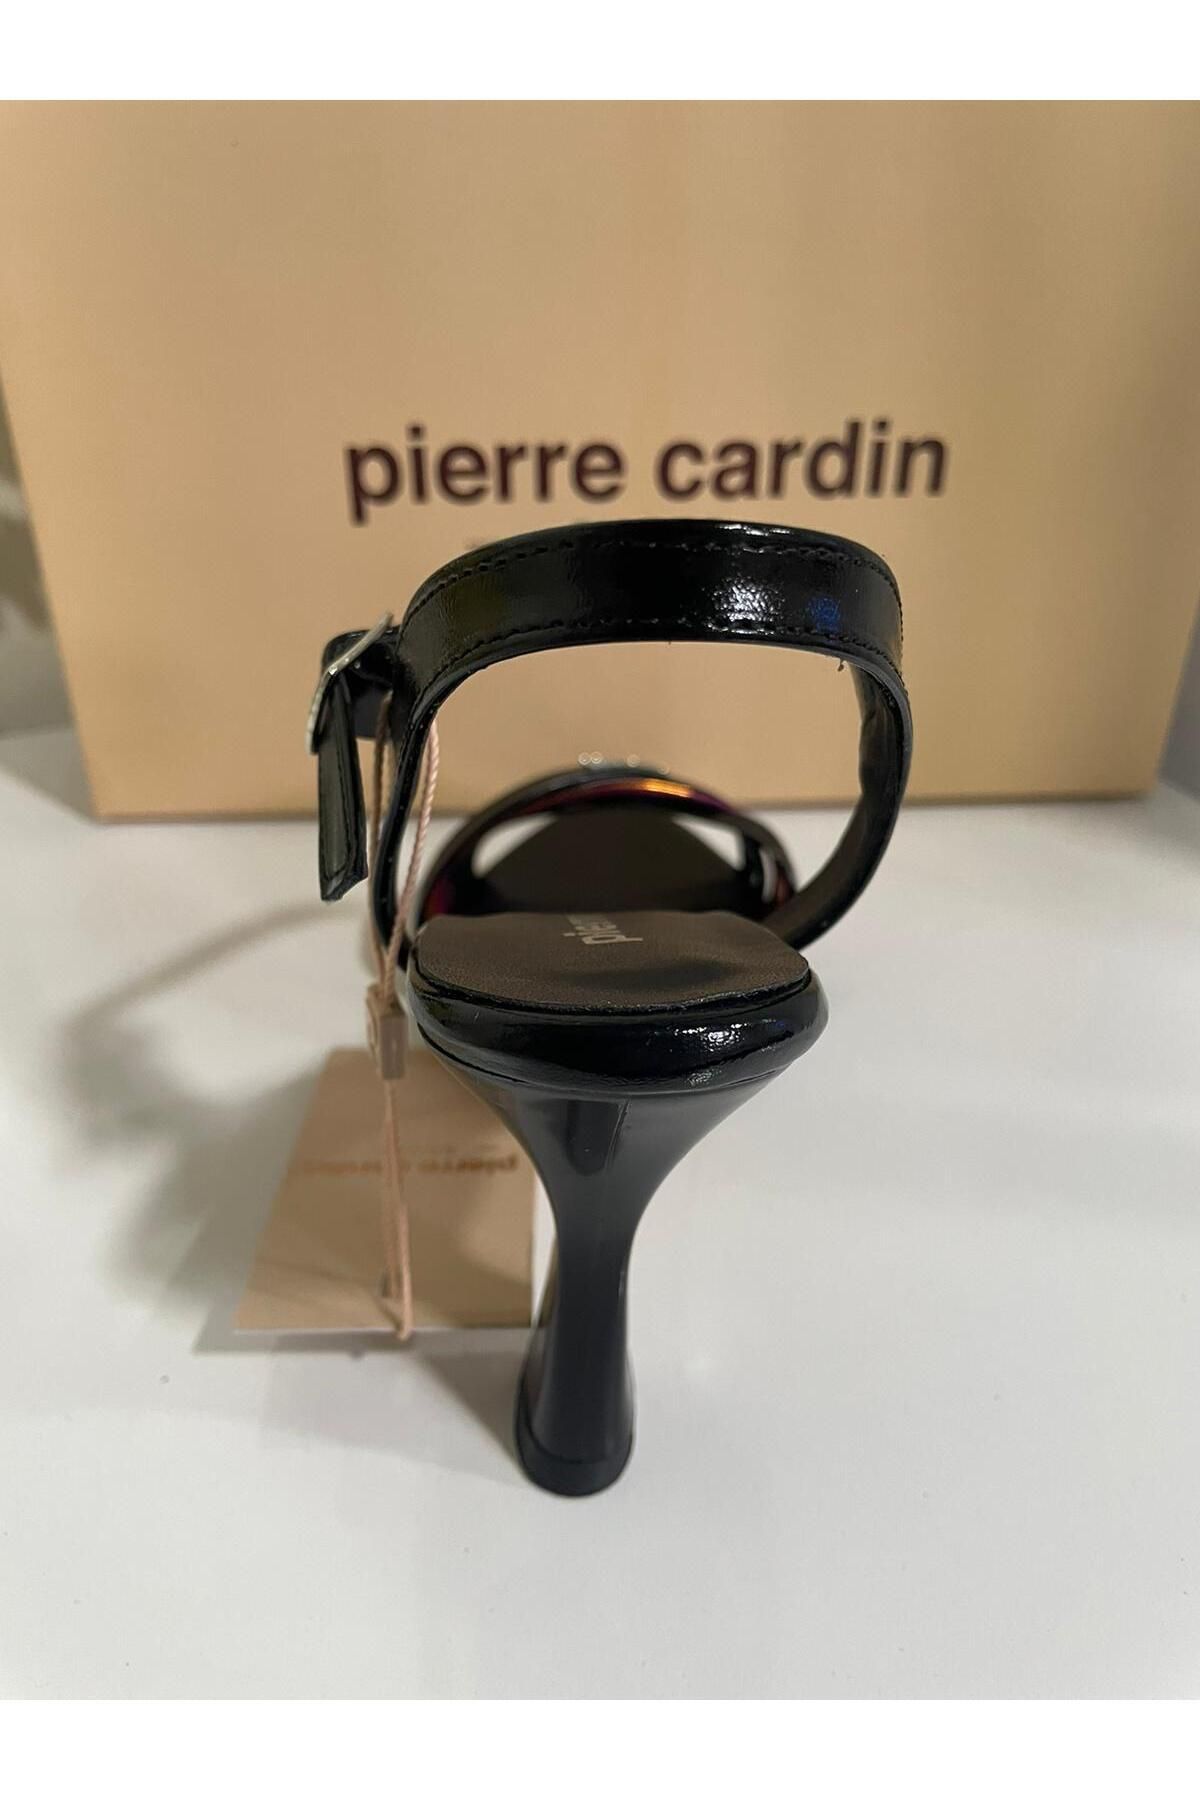 Pierre Cardin PİERRE CARDİN 53070 Taş Detaylı Kısa Kalın Rahat Topuk Renkli Topuklu Ayakkabı